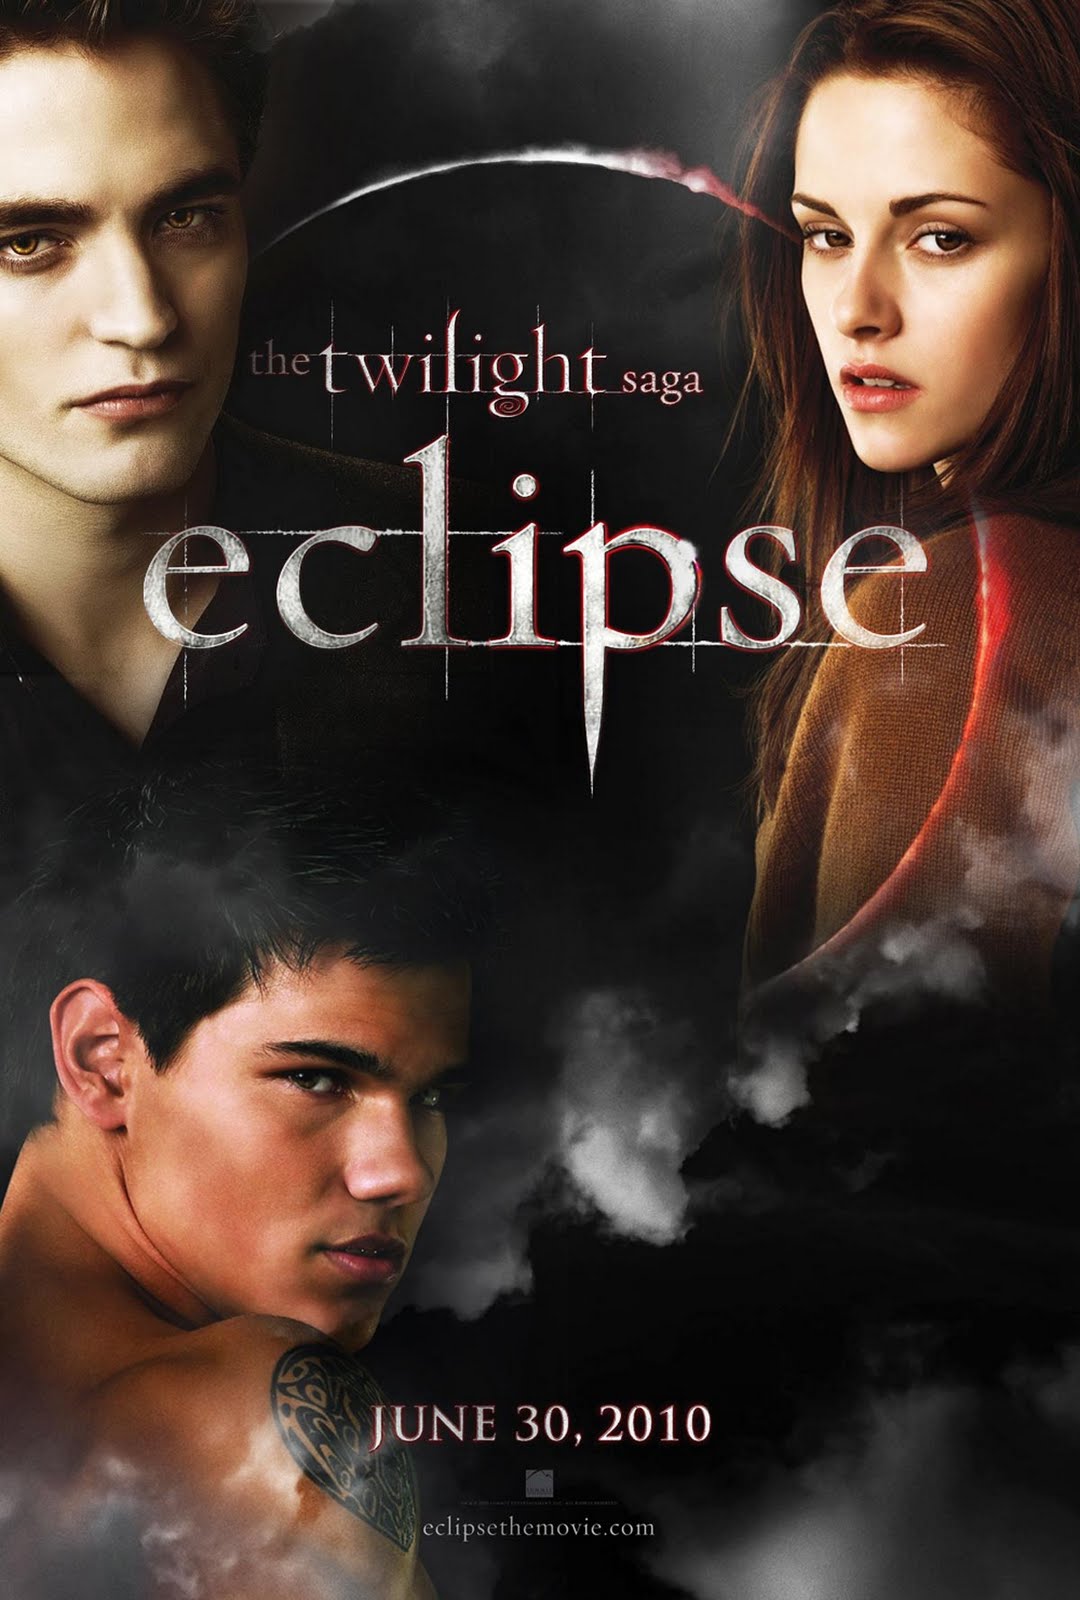 PELICULAS CALIWOOD BLU-RAY Y DVD: CREPÚSCULO 3: ECLIPSE (Twilight: Eclipse)